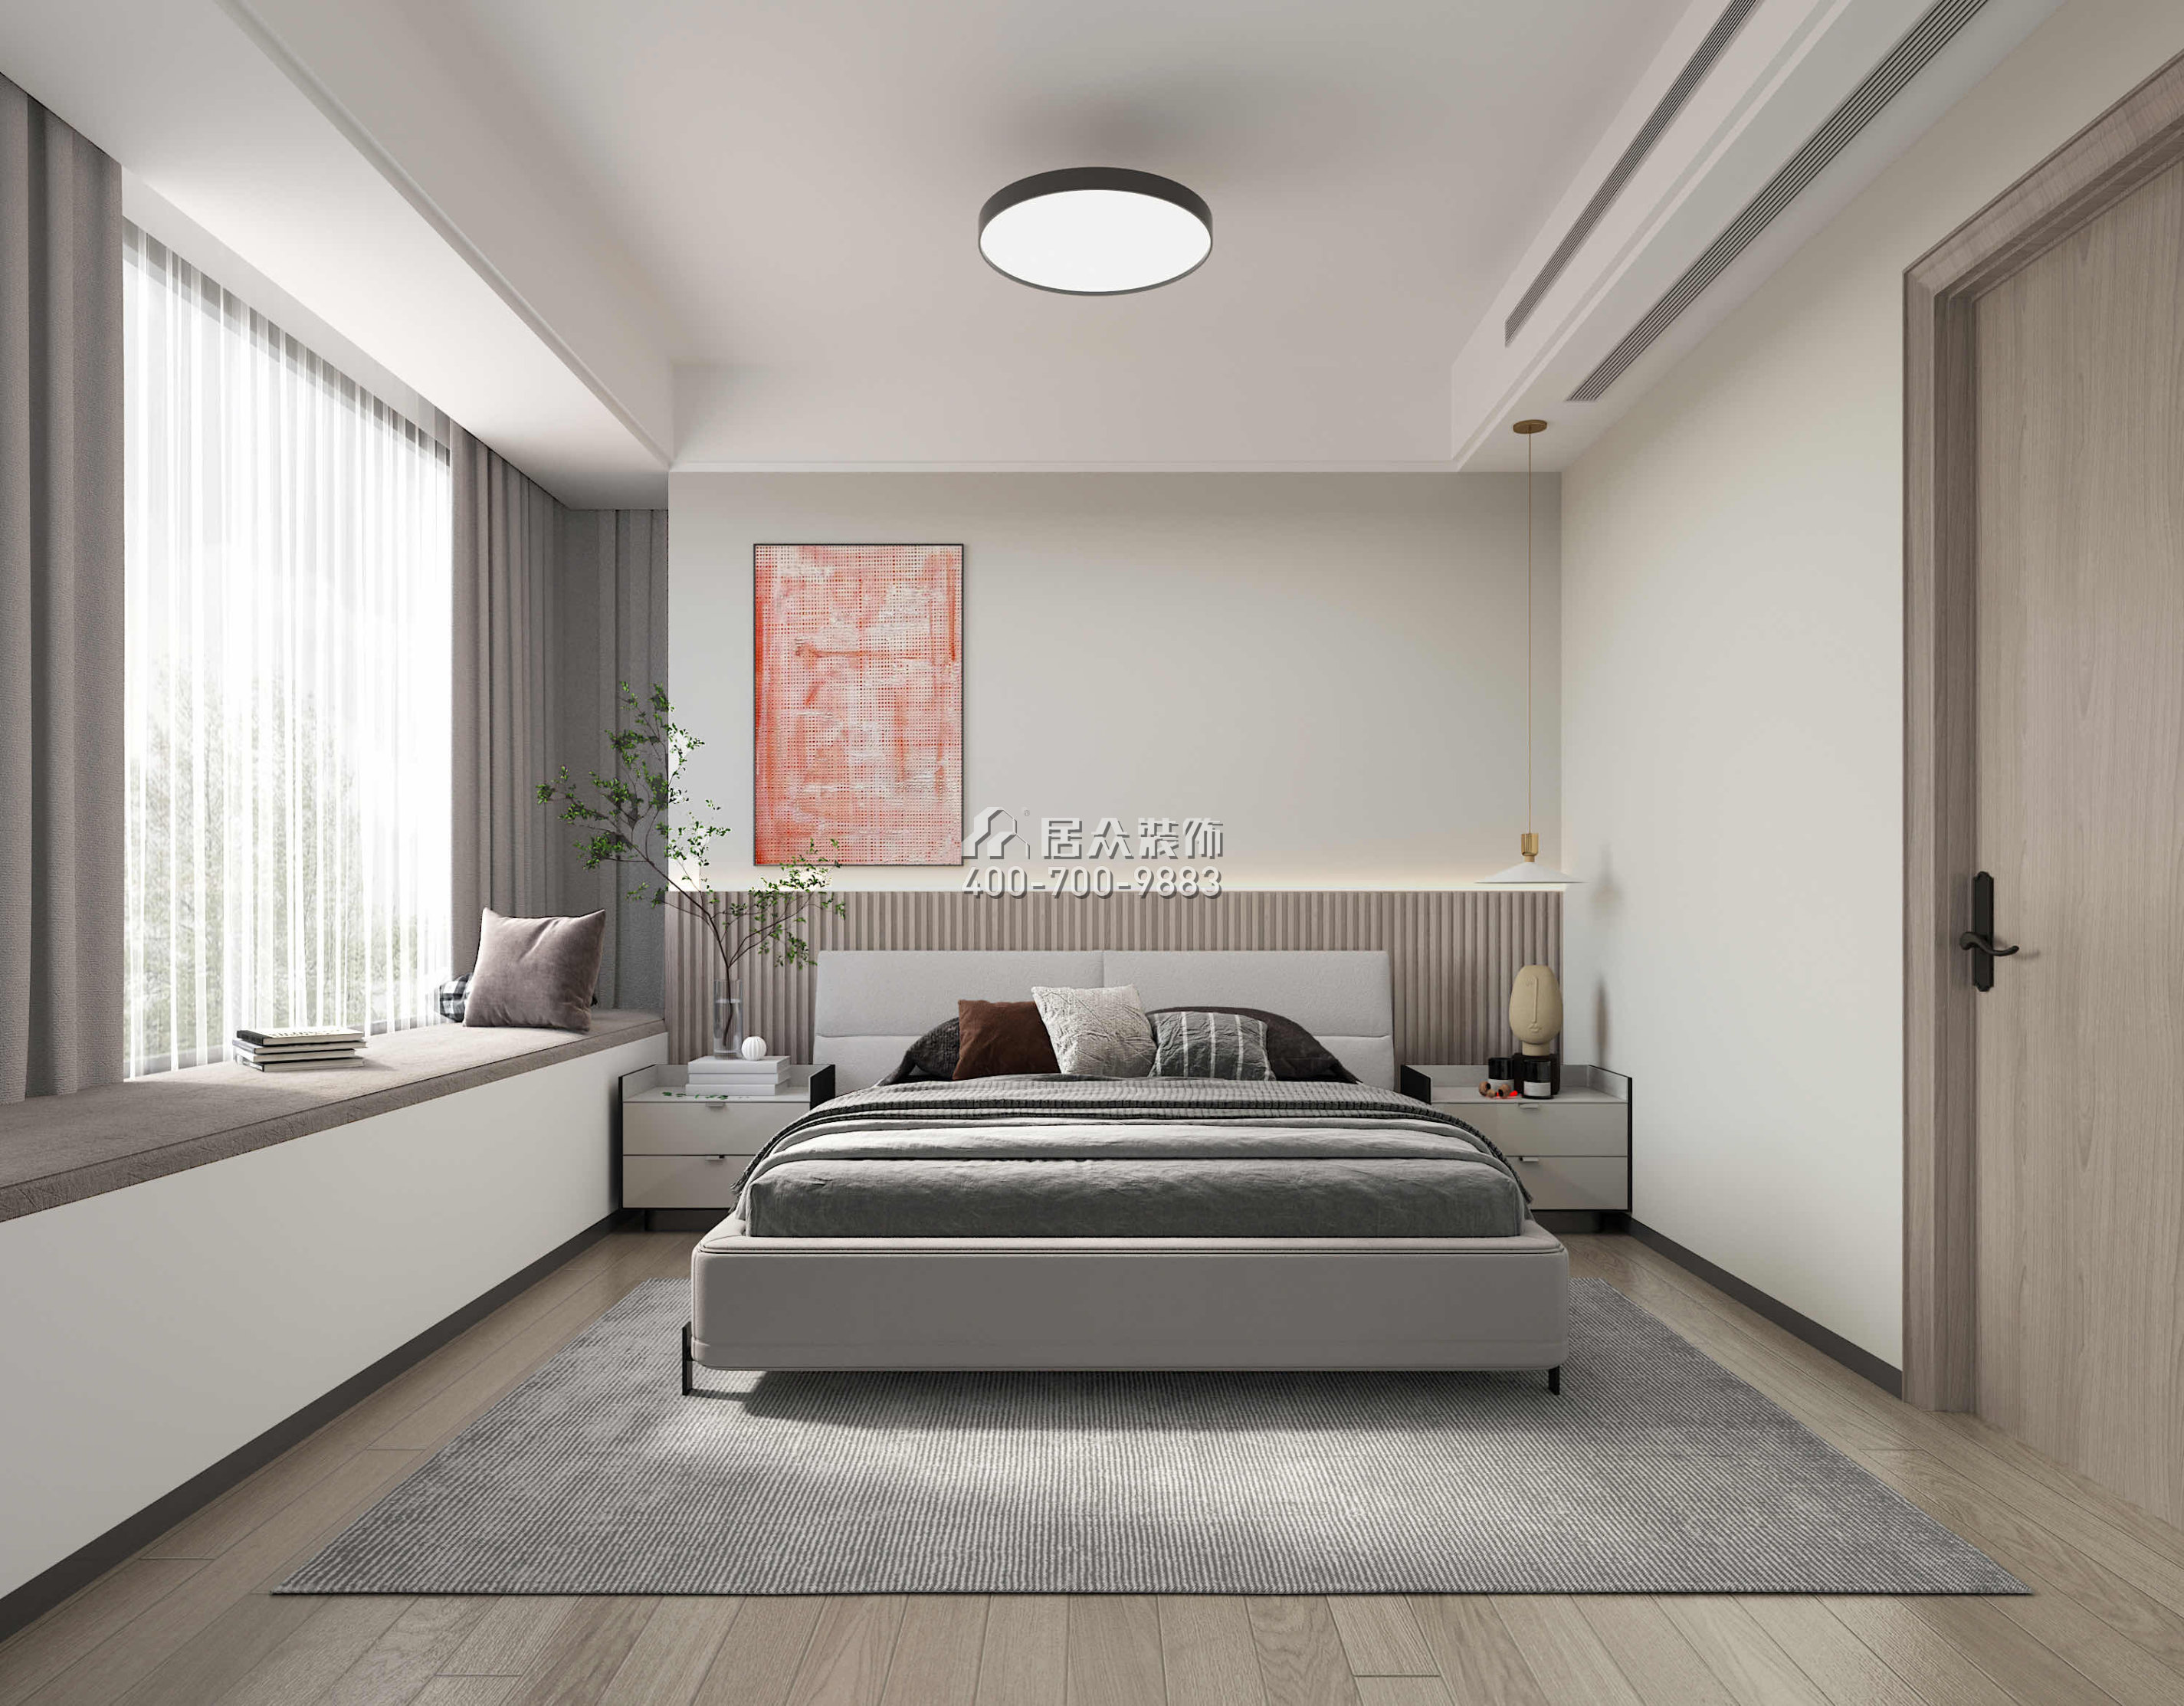 华发绿洋湾168平方米现代简约风格平层户型卧室装修效果图